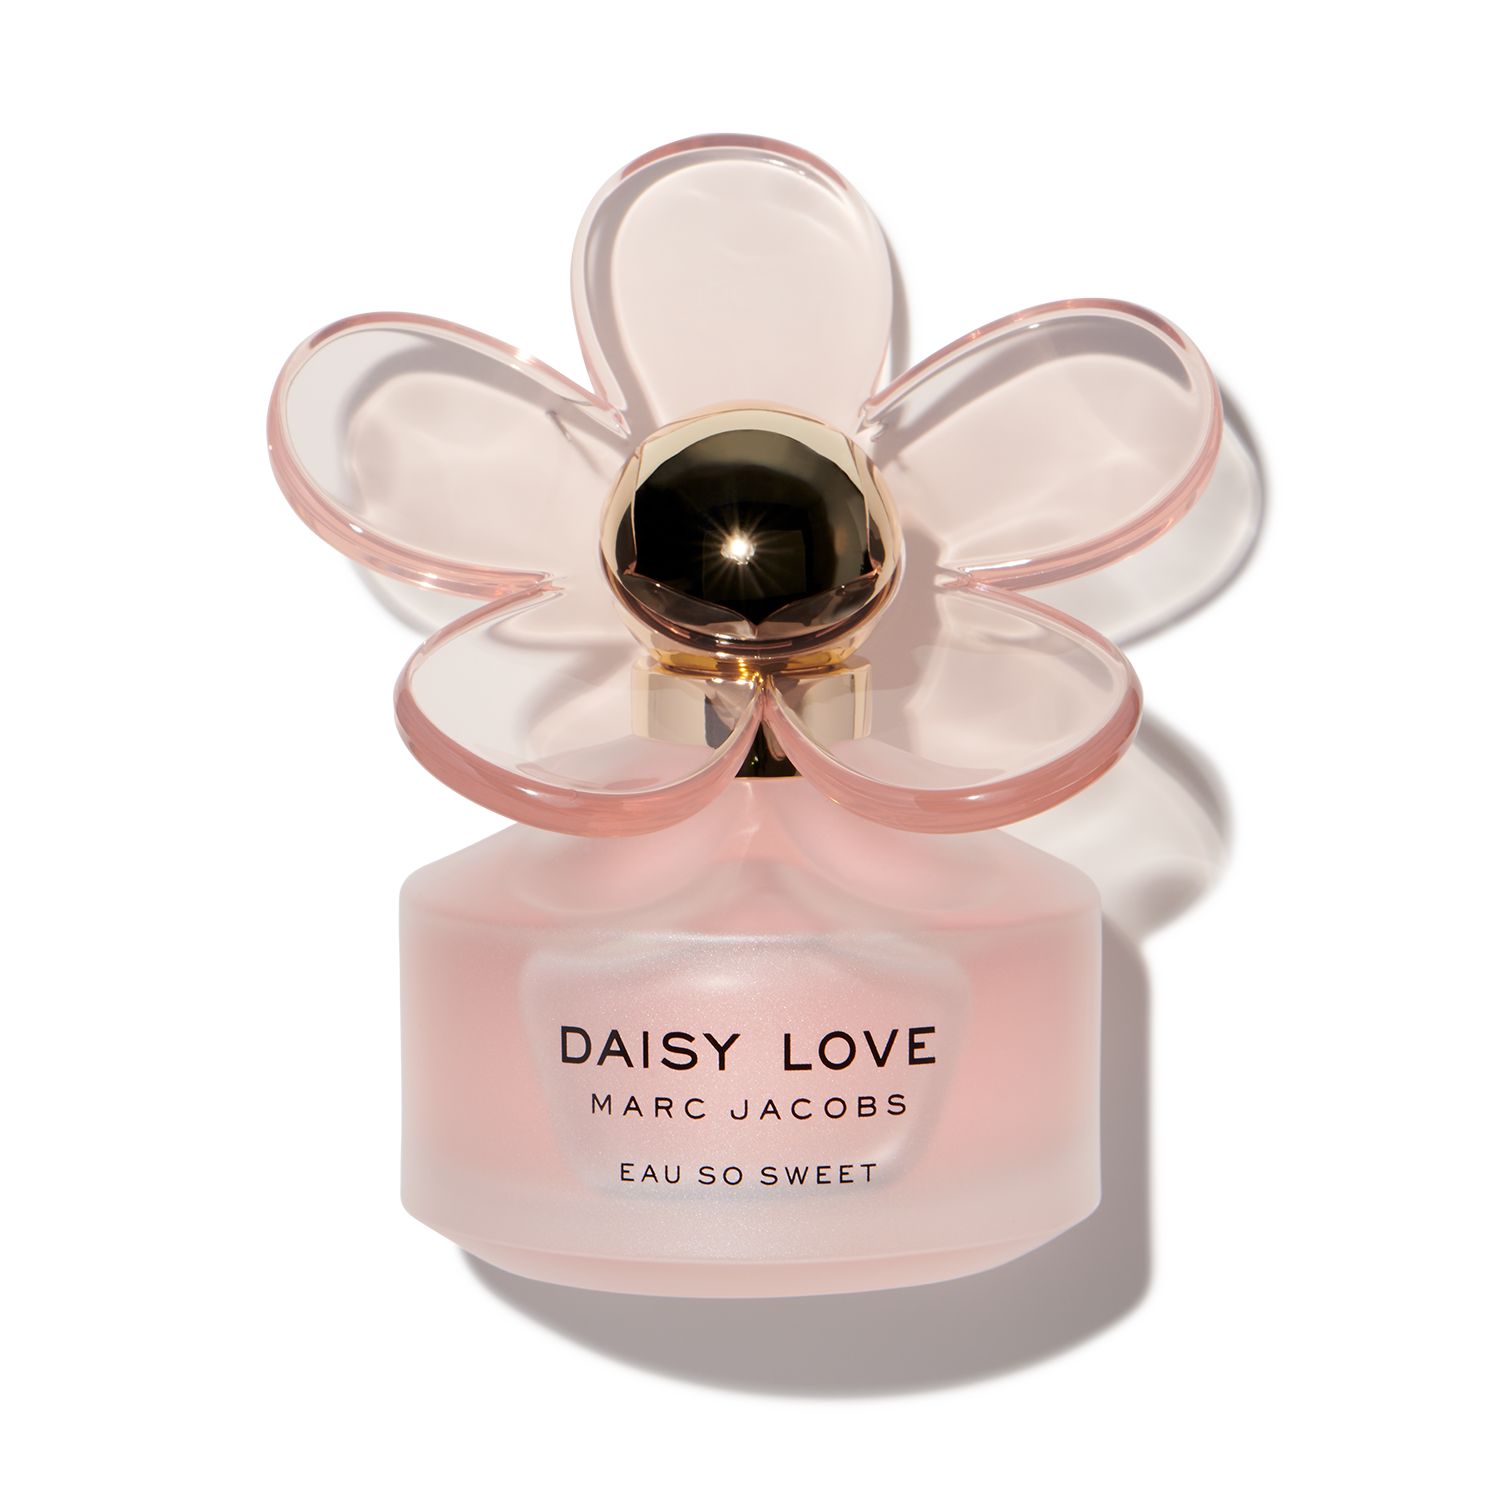 Marc Jacobs Daisy Love Eau So Sweet for $7.95 | Scentbird